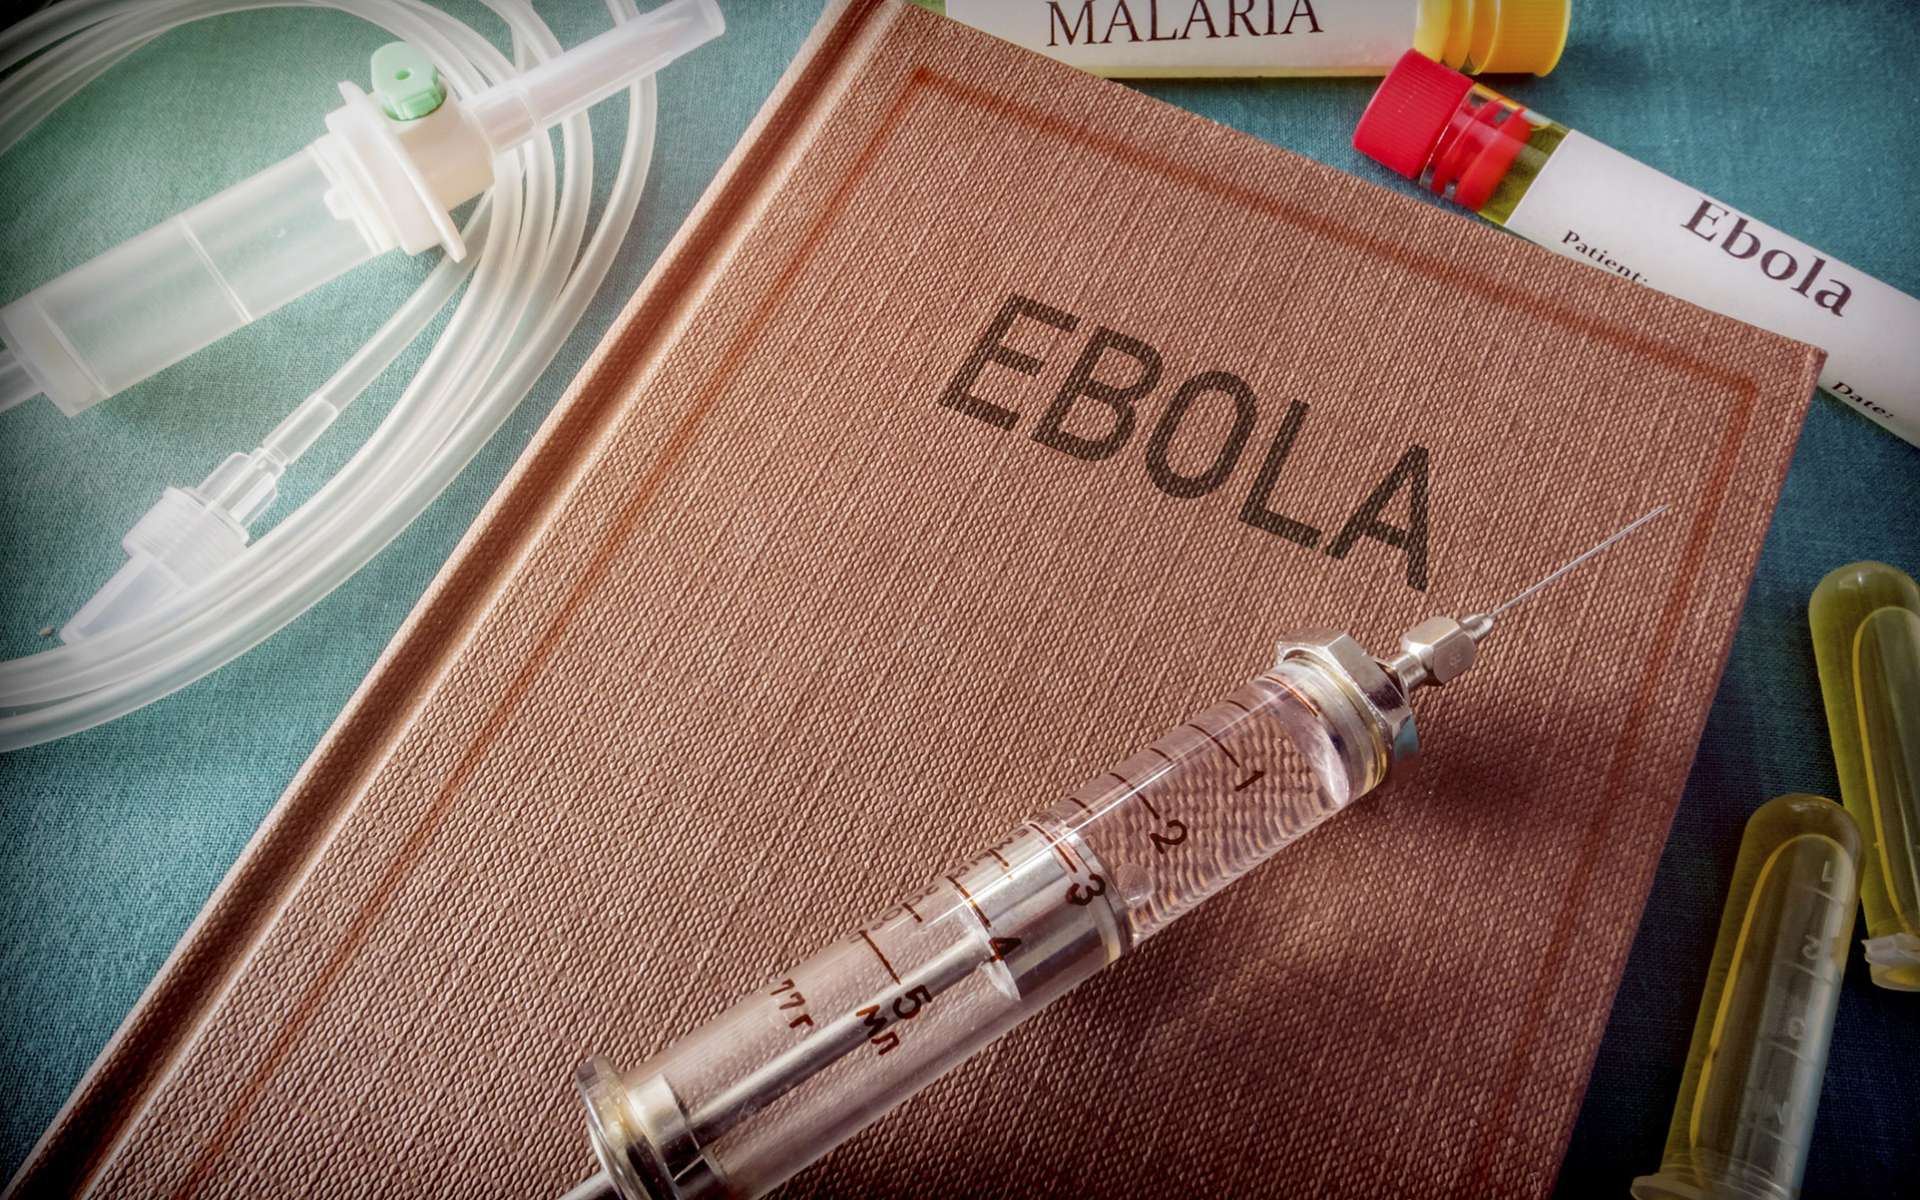 Enfin un vaccin contre le virus Ebola